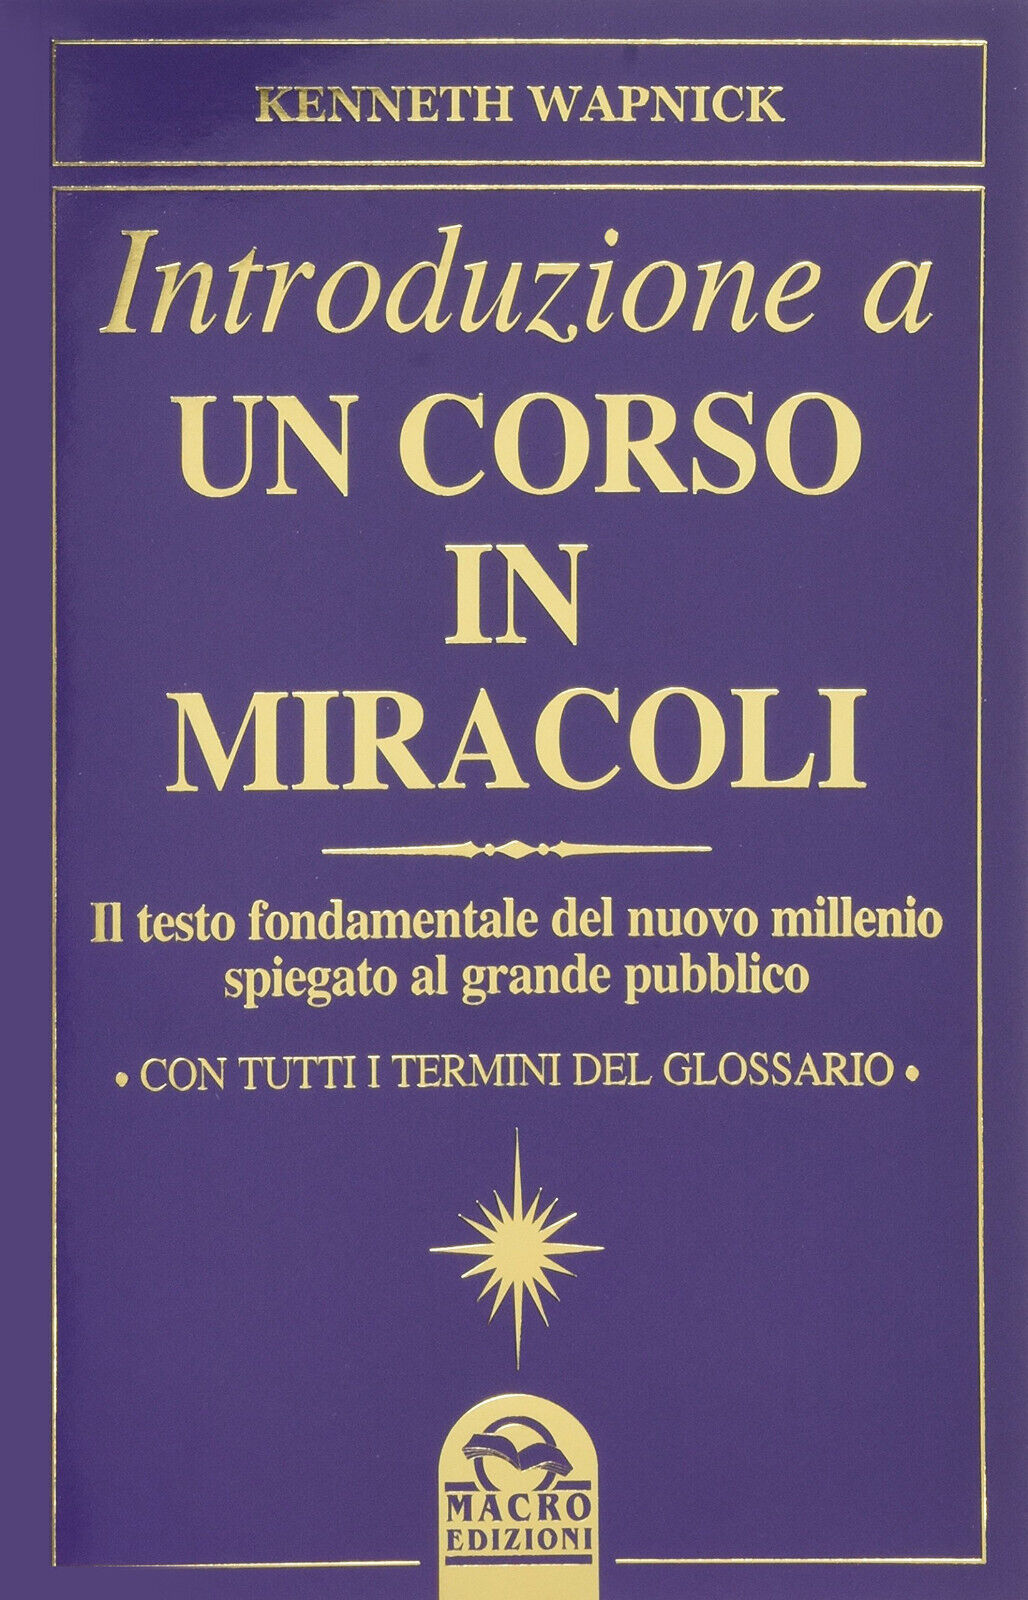 Introduzione a un corso in miracoli - Kenneth Wapnick - Macro edizioni, 2015 libro usato